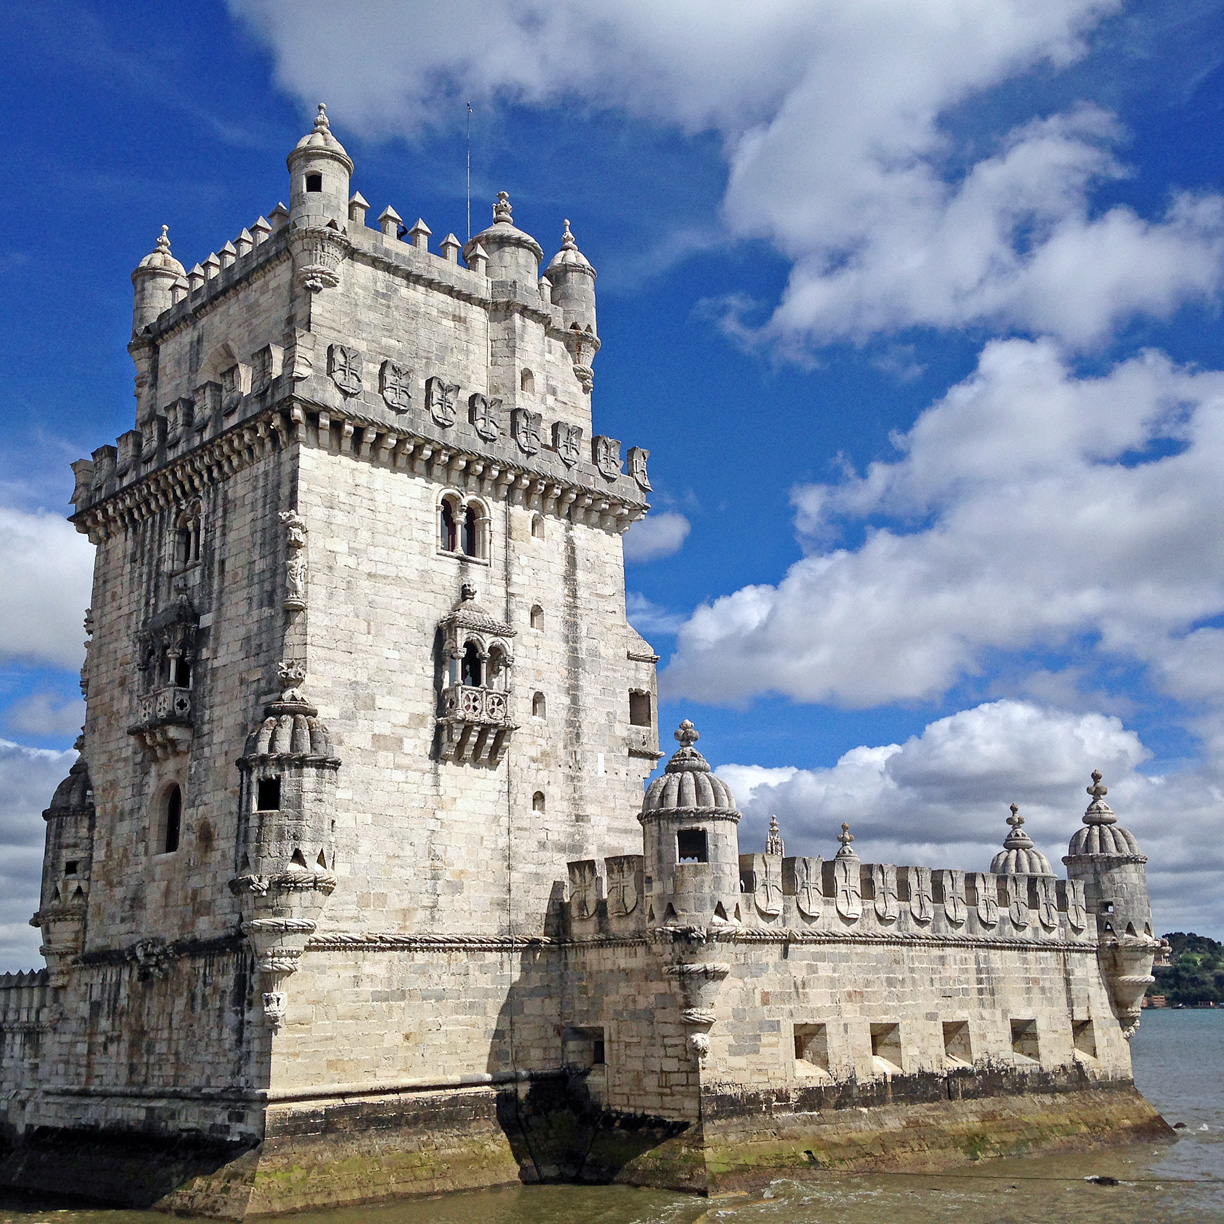 1. Belem Tower in Lisbon